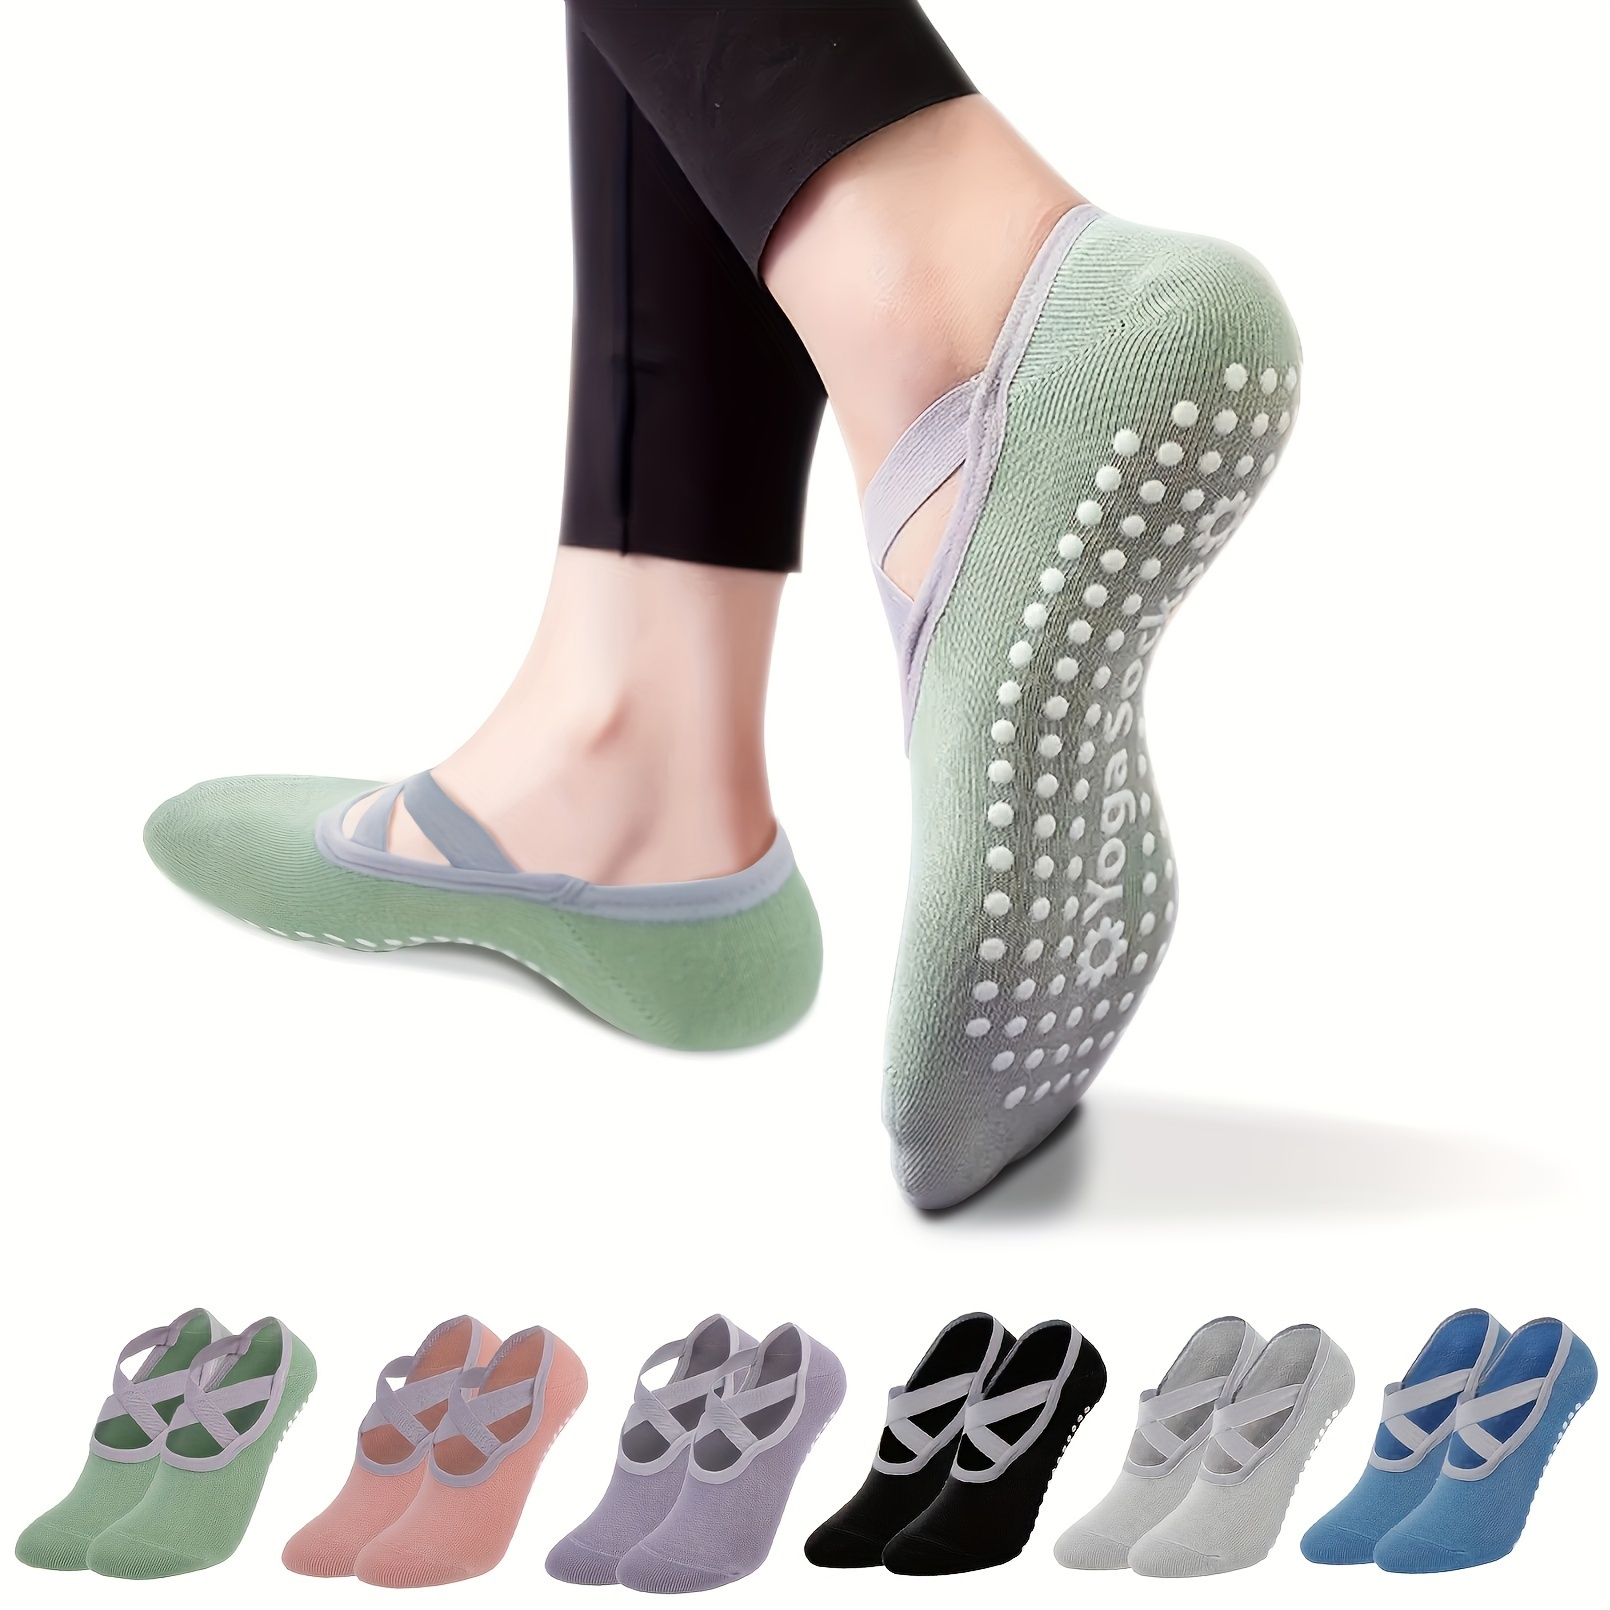 Yoga Socks For Women Non-Slip Grips & Straps Non Slip Socks For